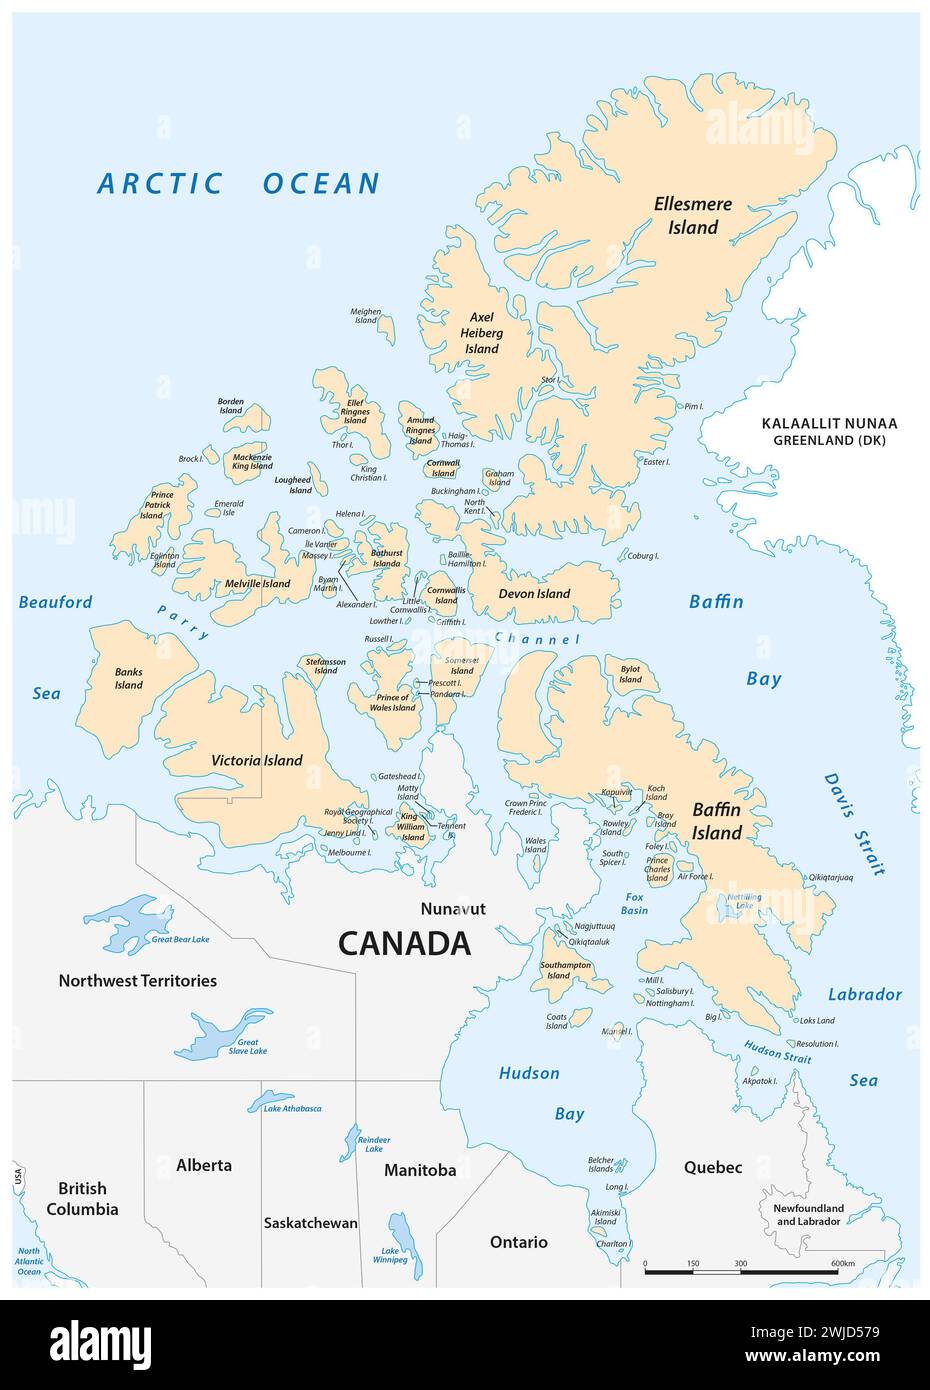 Mappa vettoriale dettagliata dell'arcipelago artico canadese Foto Stock